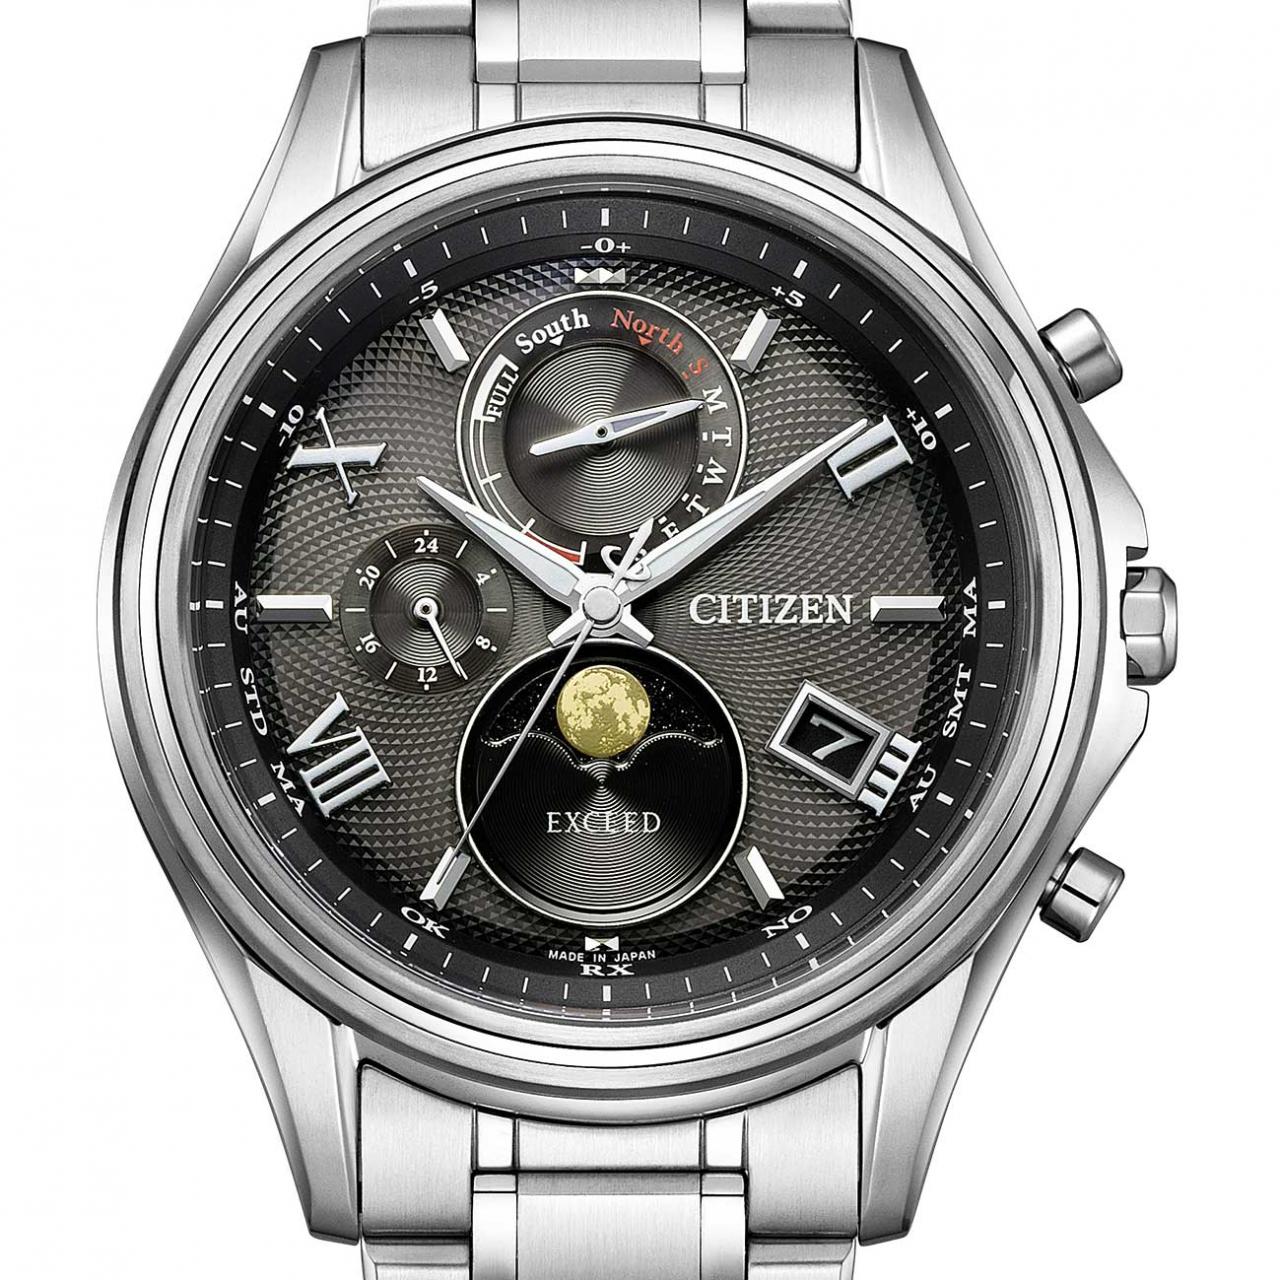 [新品] CITIZEN Exceed 電波手錶 H874-004JJ01/BY1020-61E TI 太陽能石英